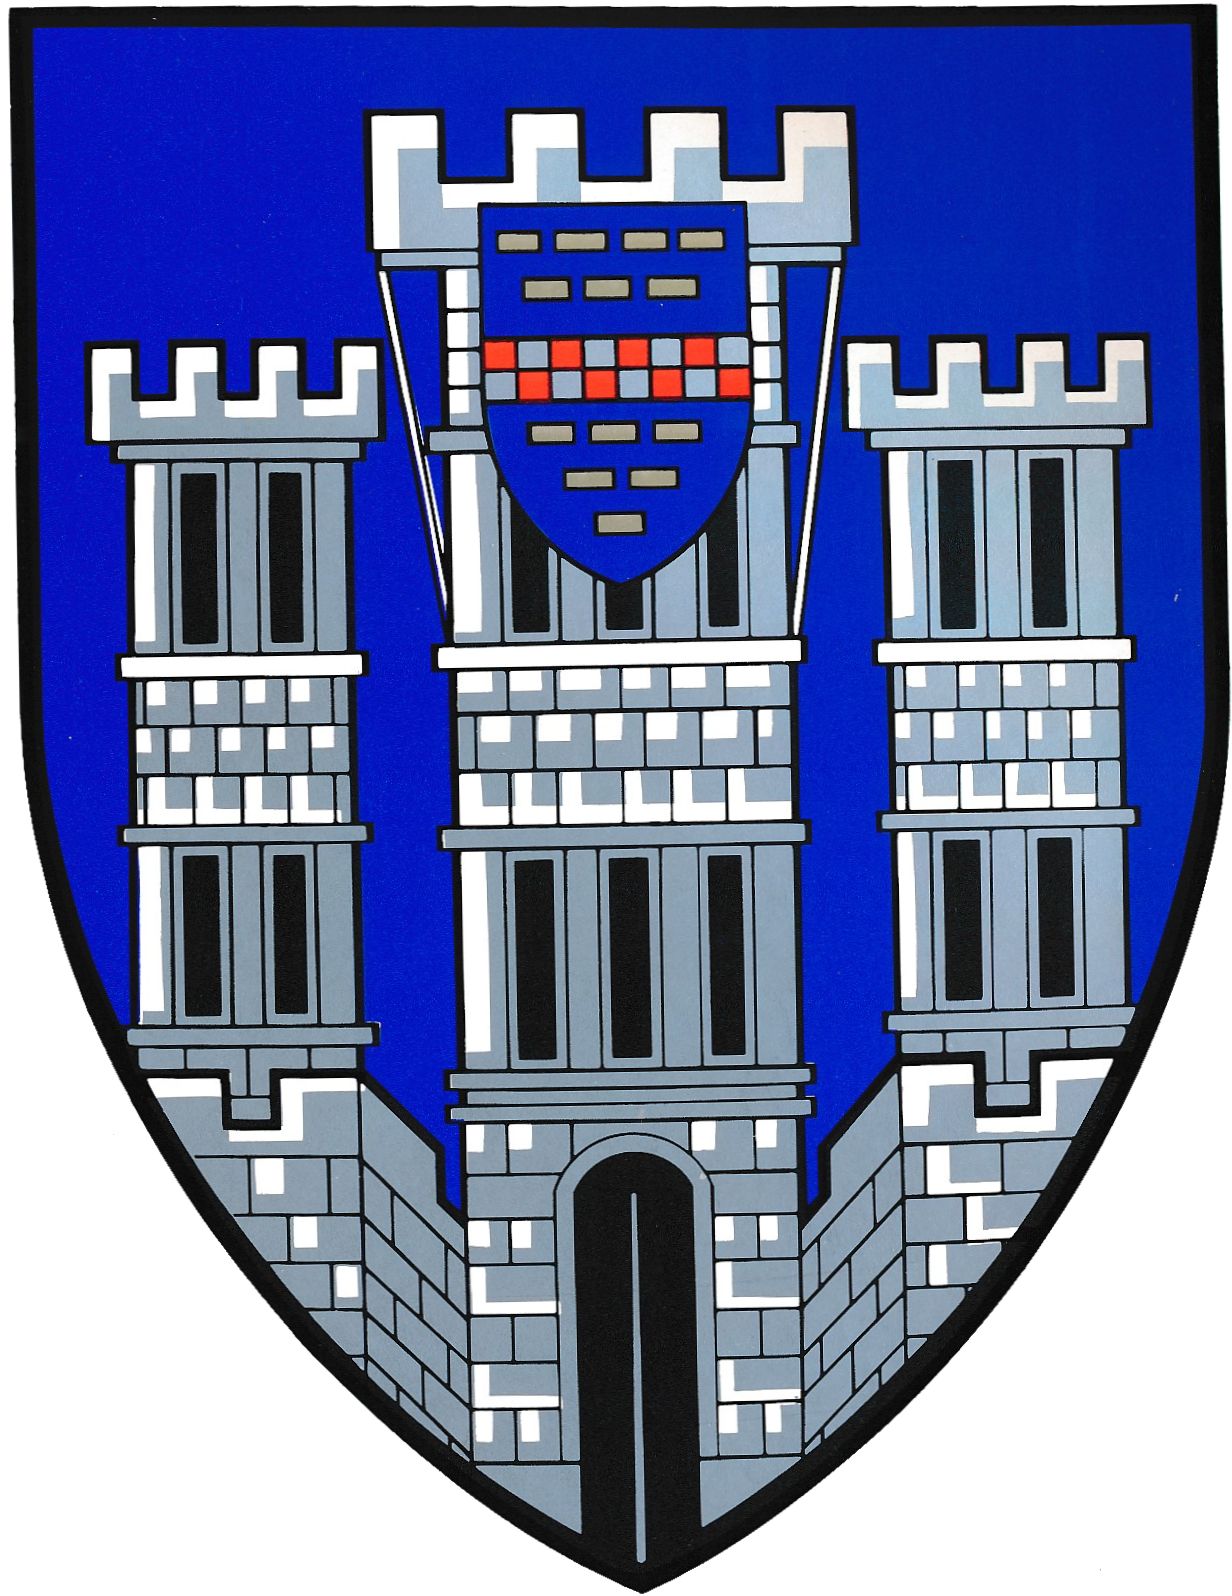 Wappen von Limburg an der Lahn